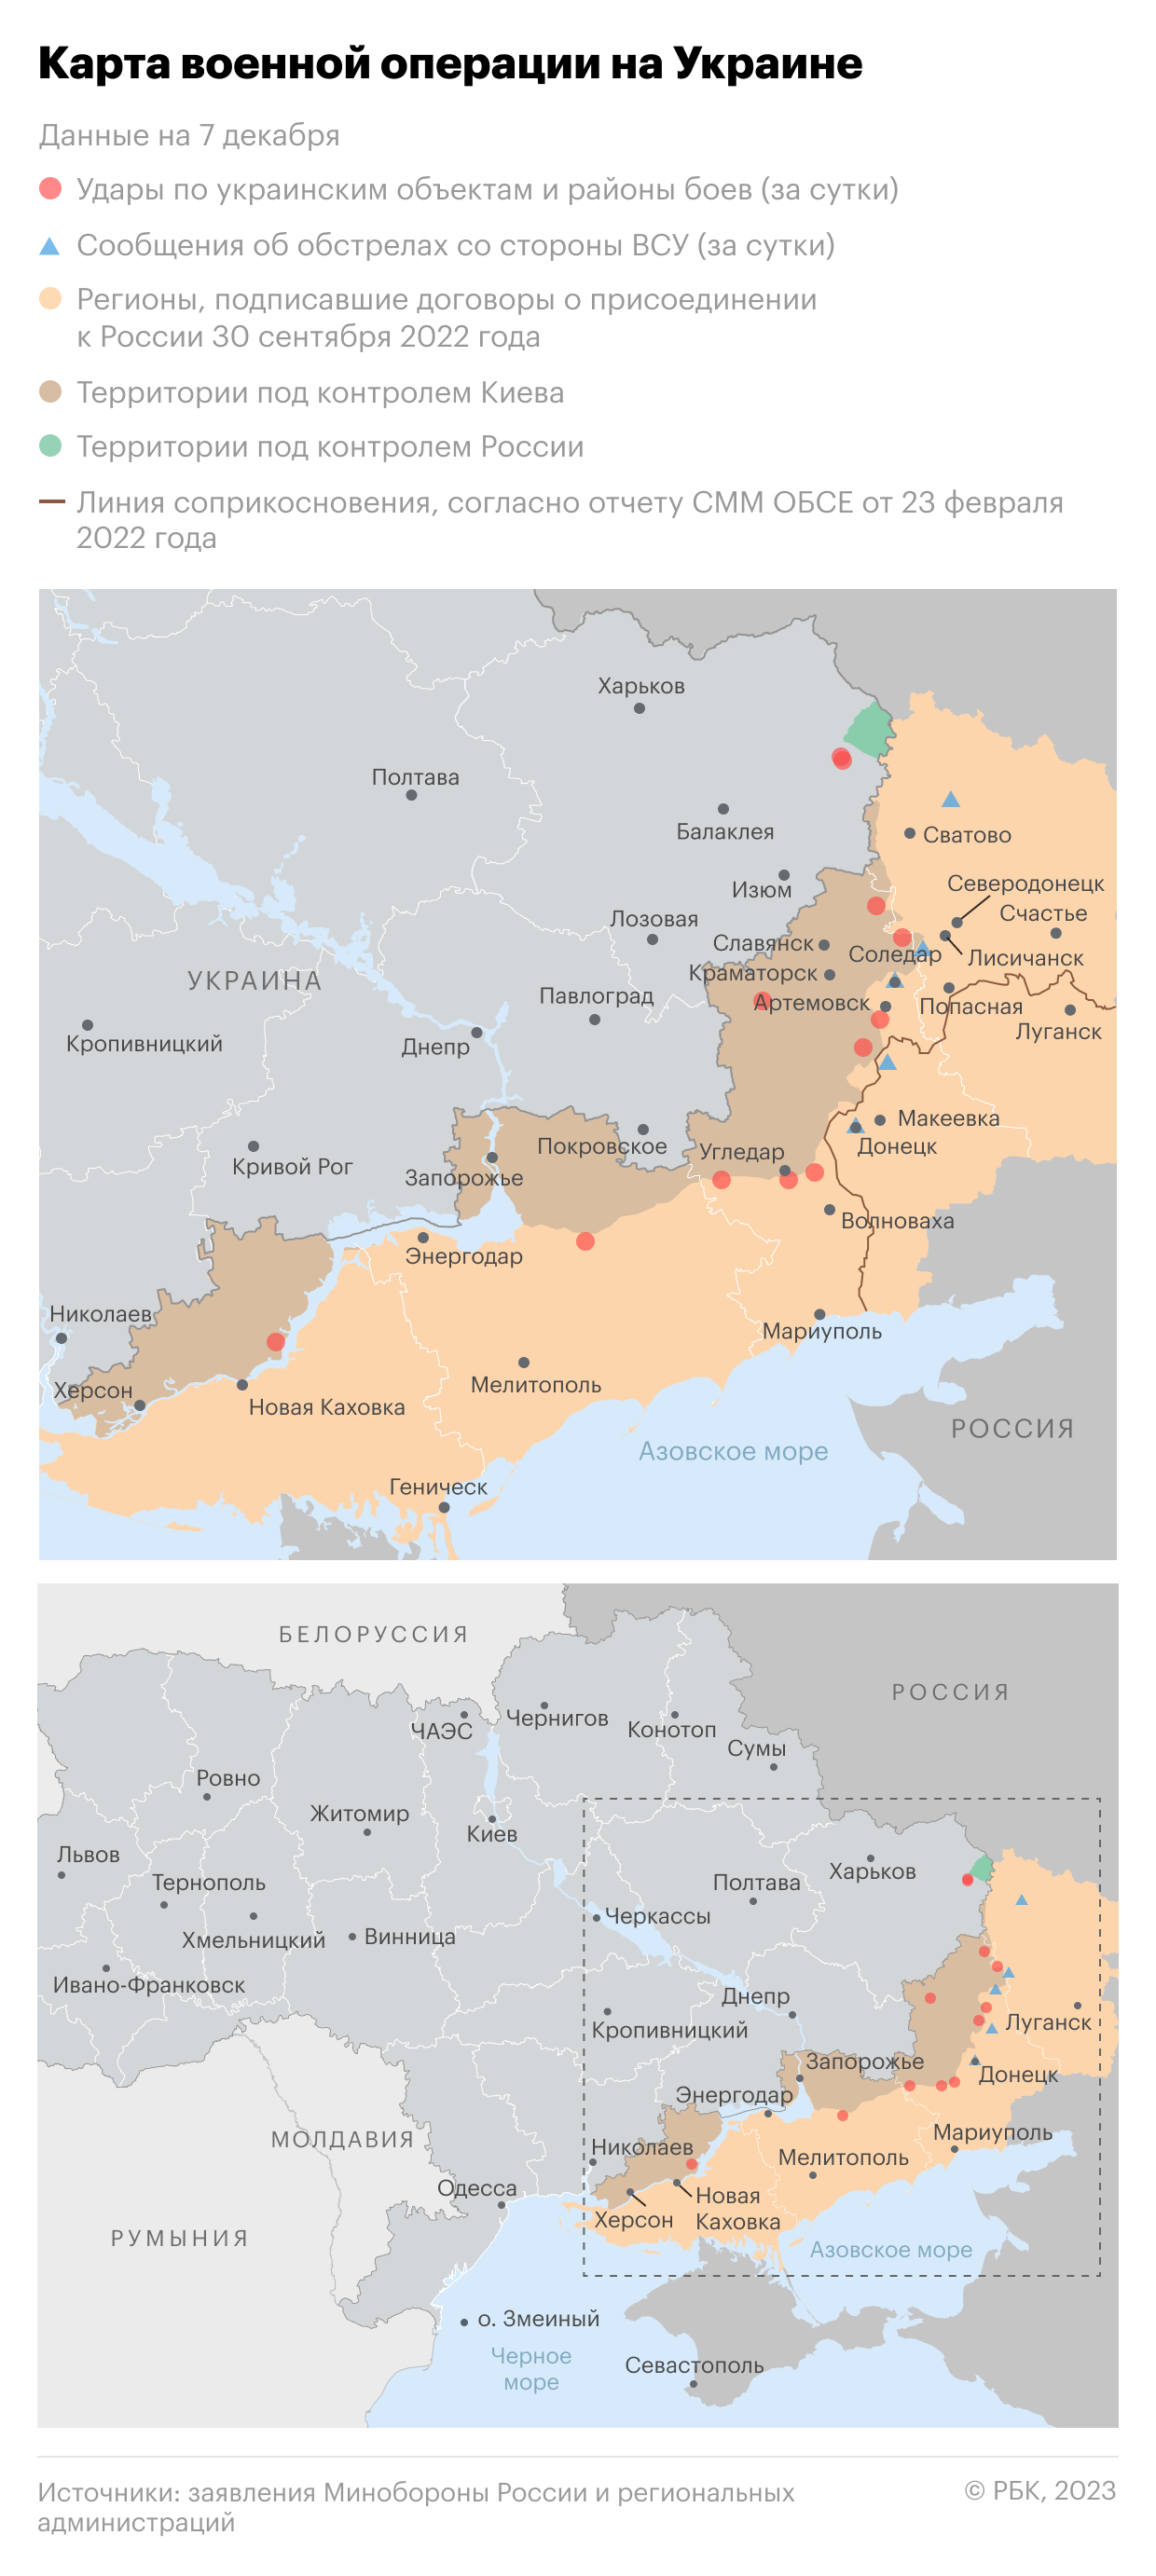 Военная операция на Украине. Карта на 7 декабря